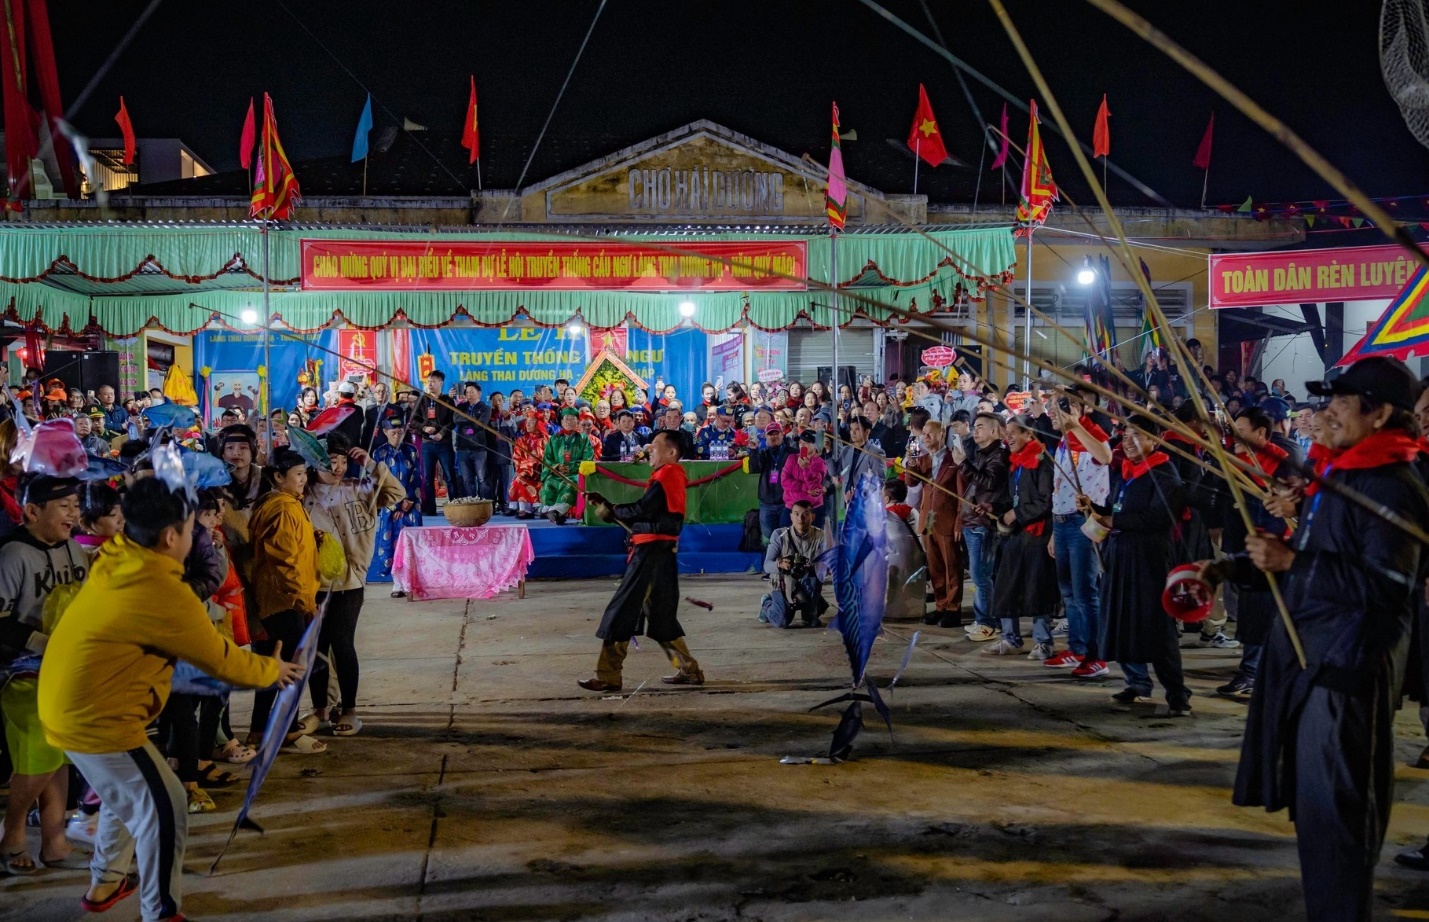 Lễ hội cầu ngư ở Huế hấp dẫn đông đảo du khách và người dân - 1